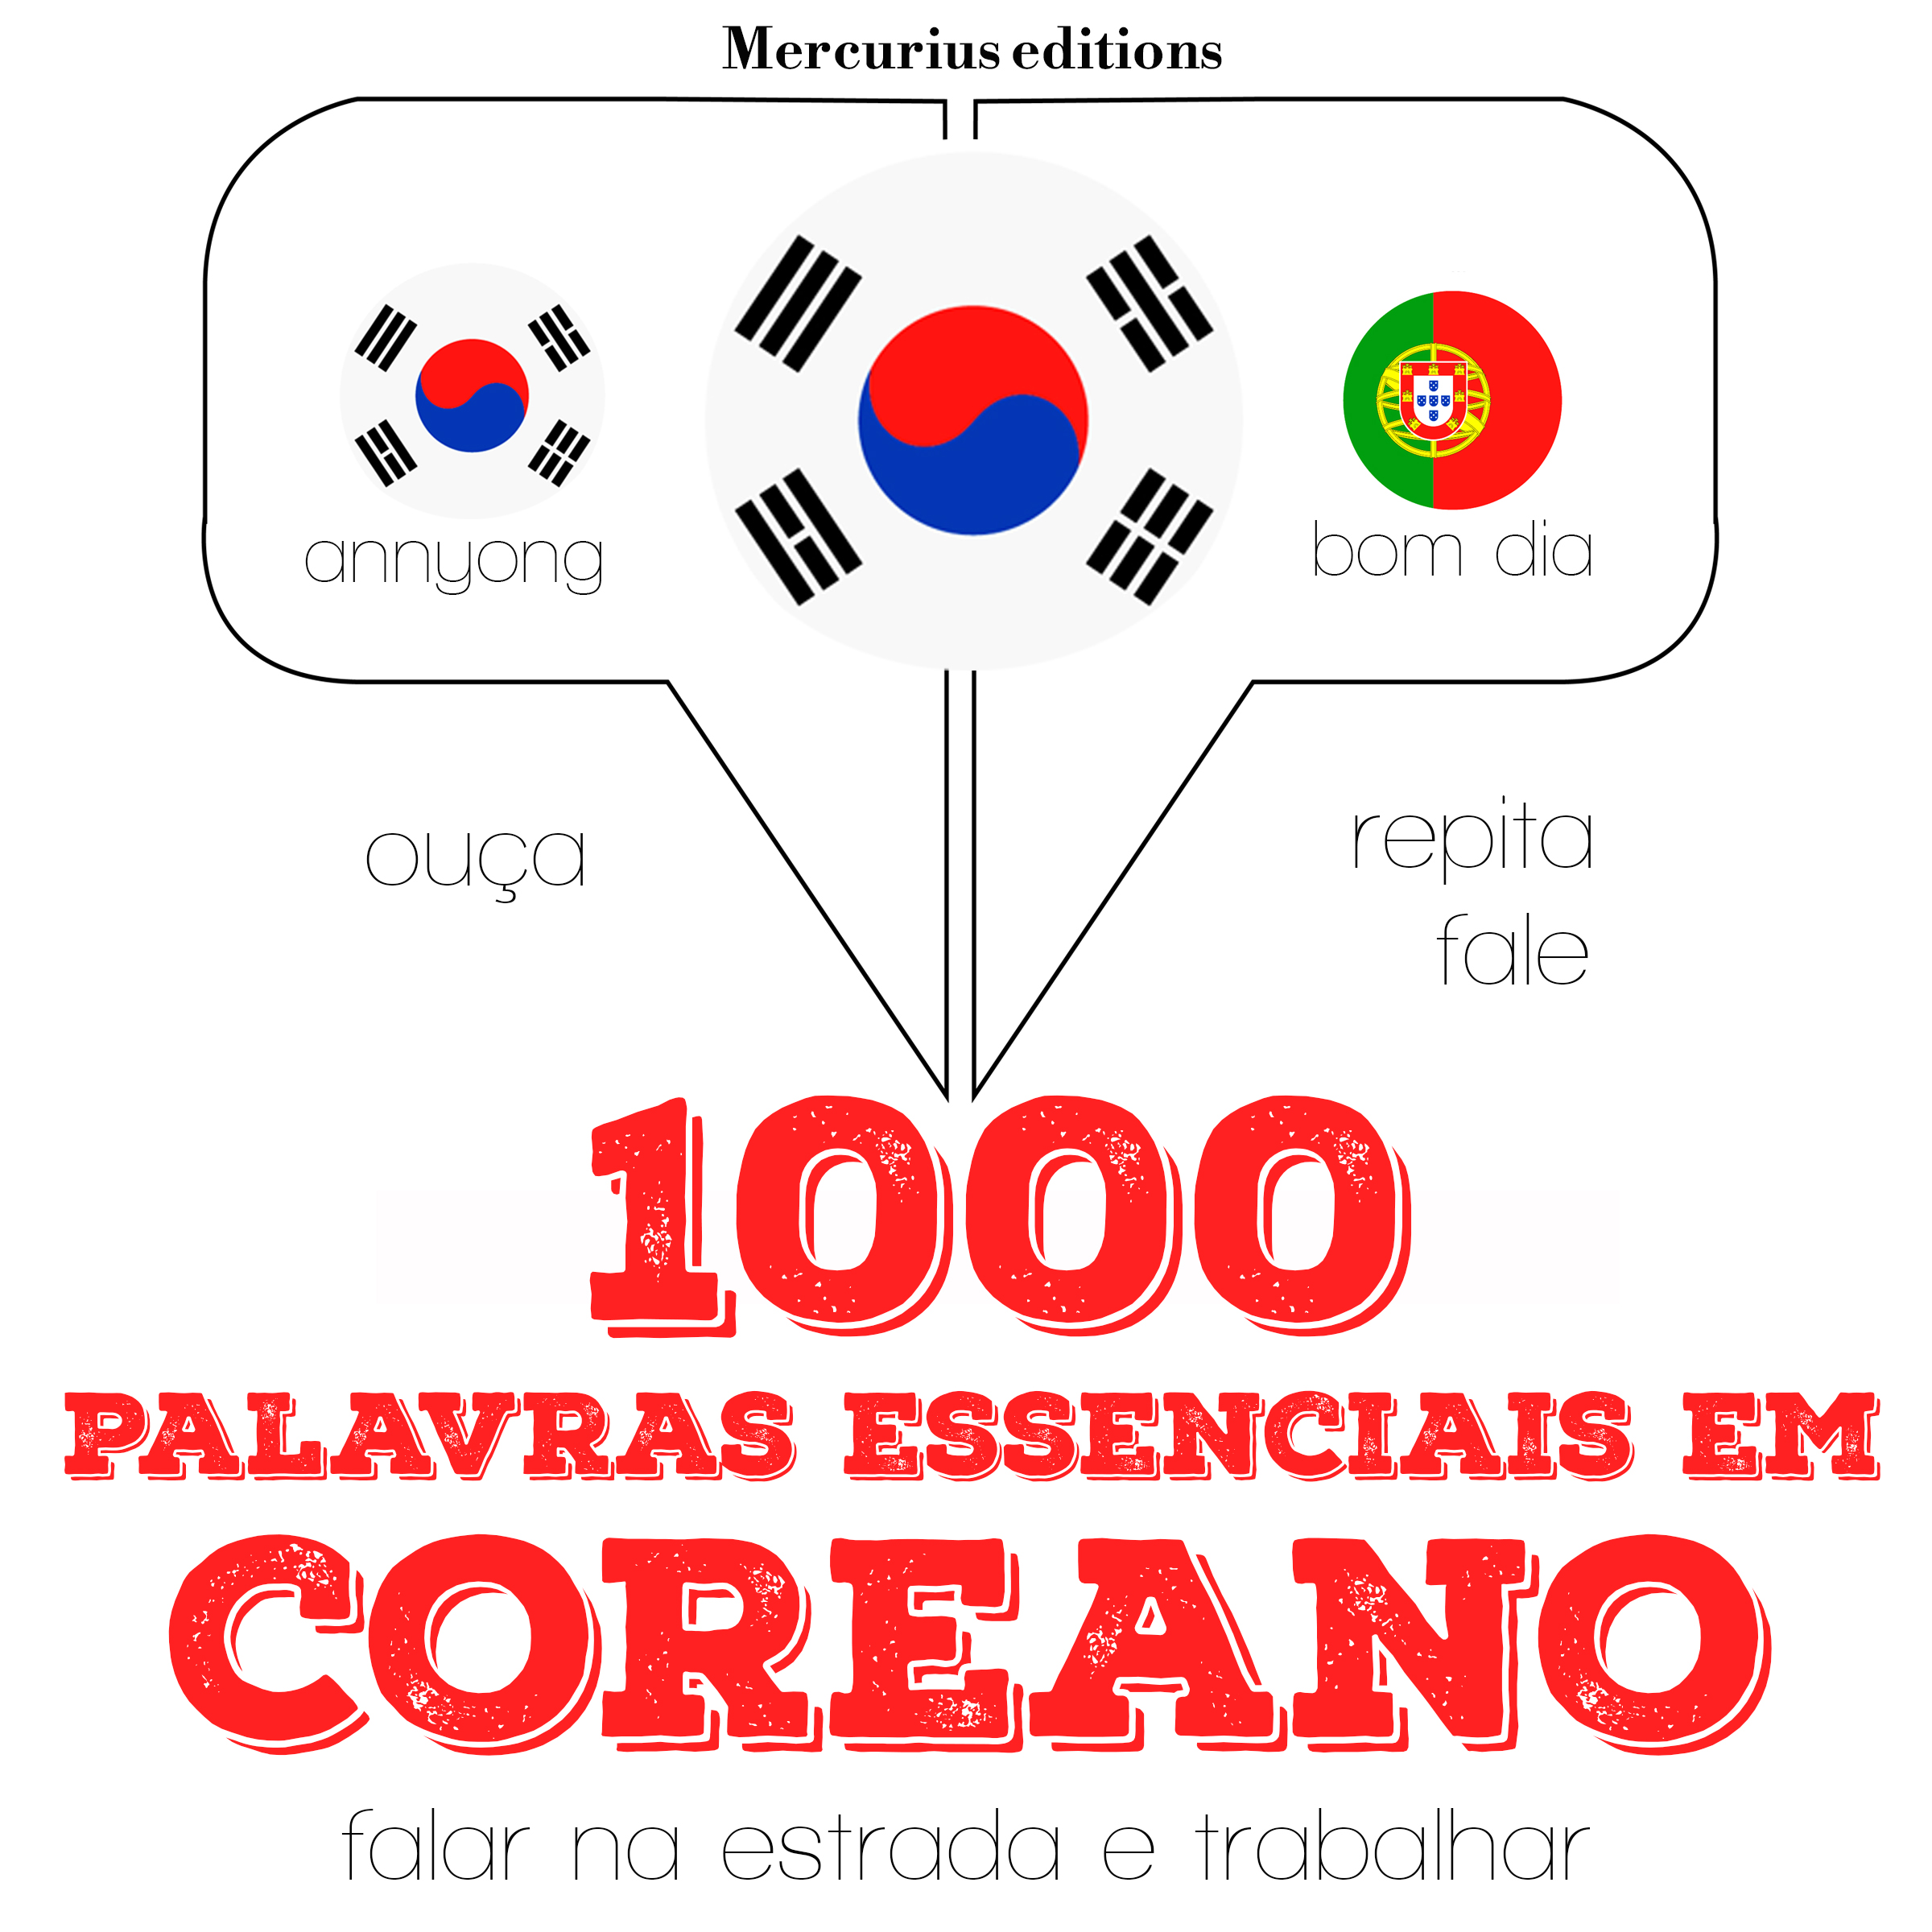 1000 palavras essenciais em coreano | Mercurius Editions